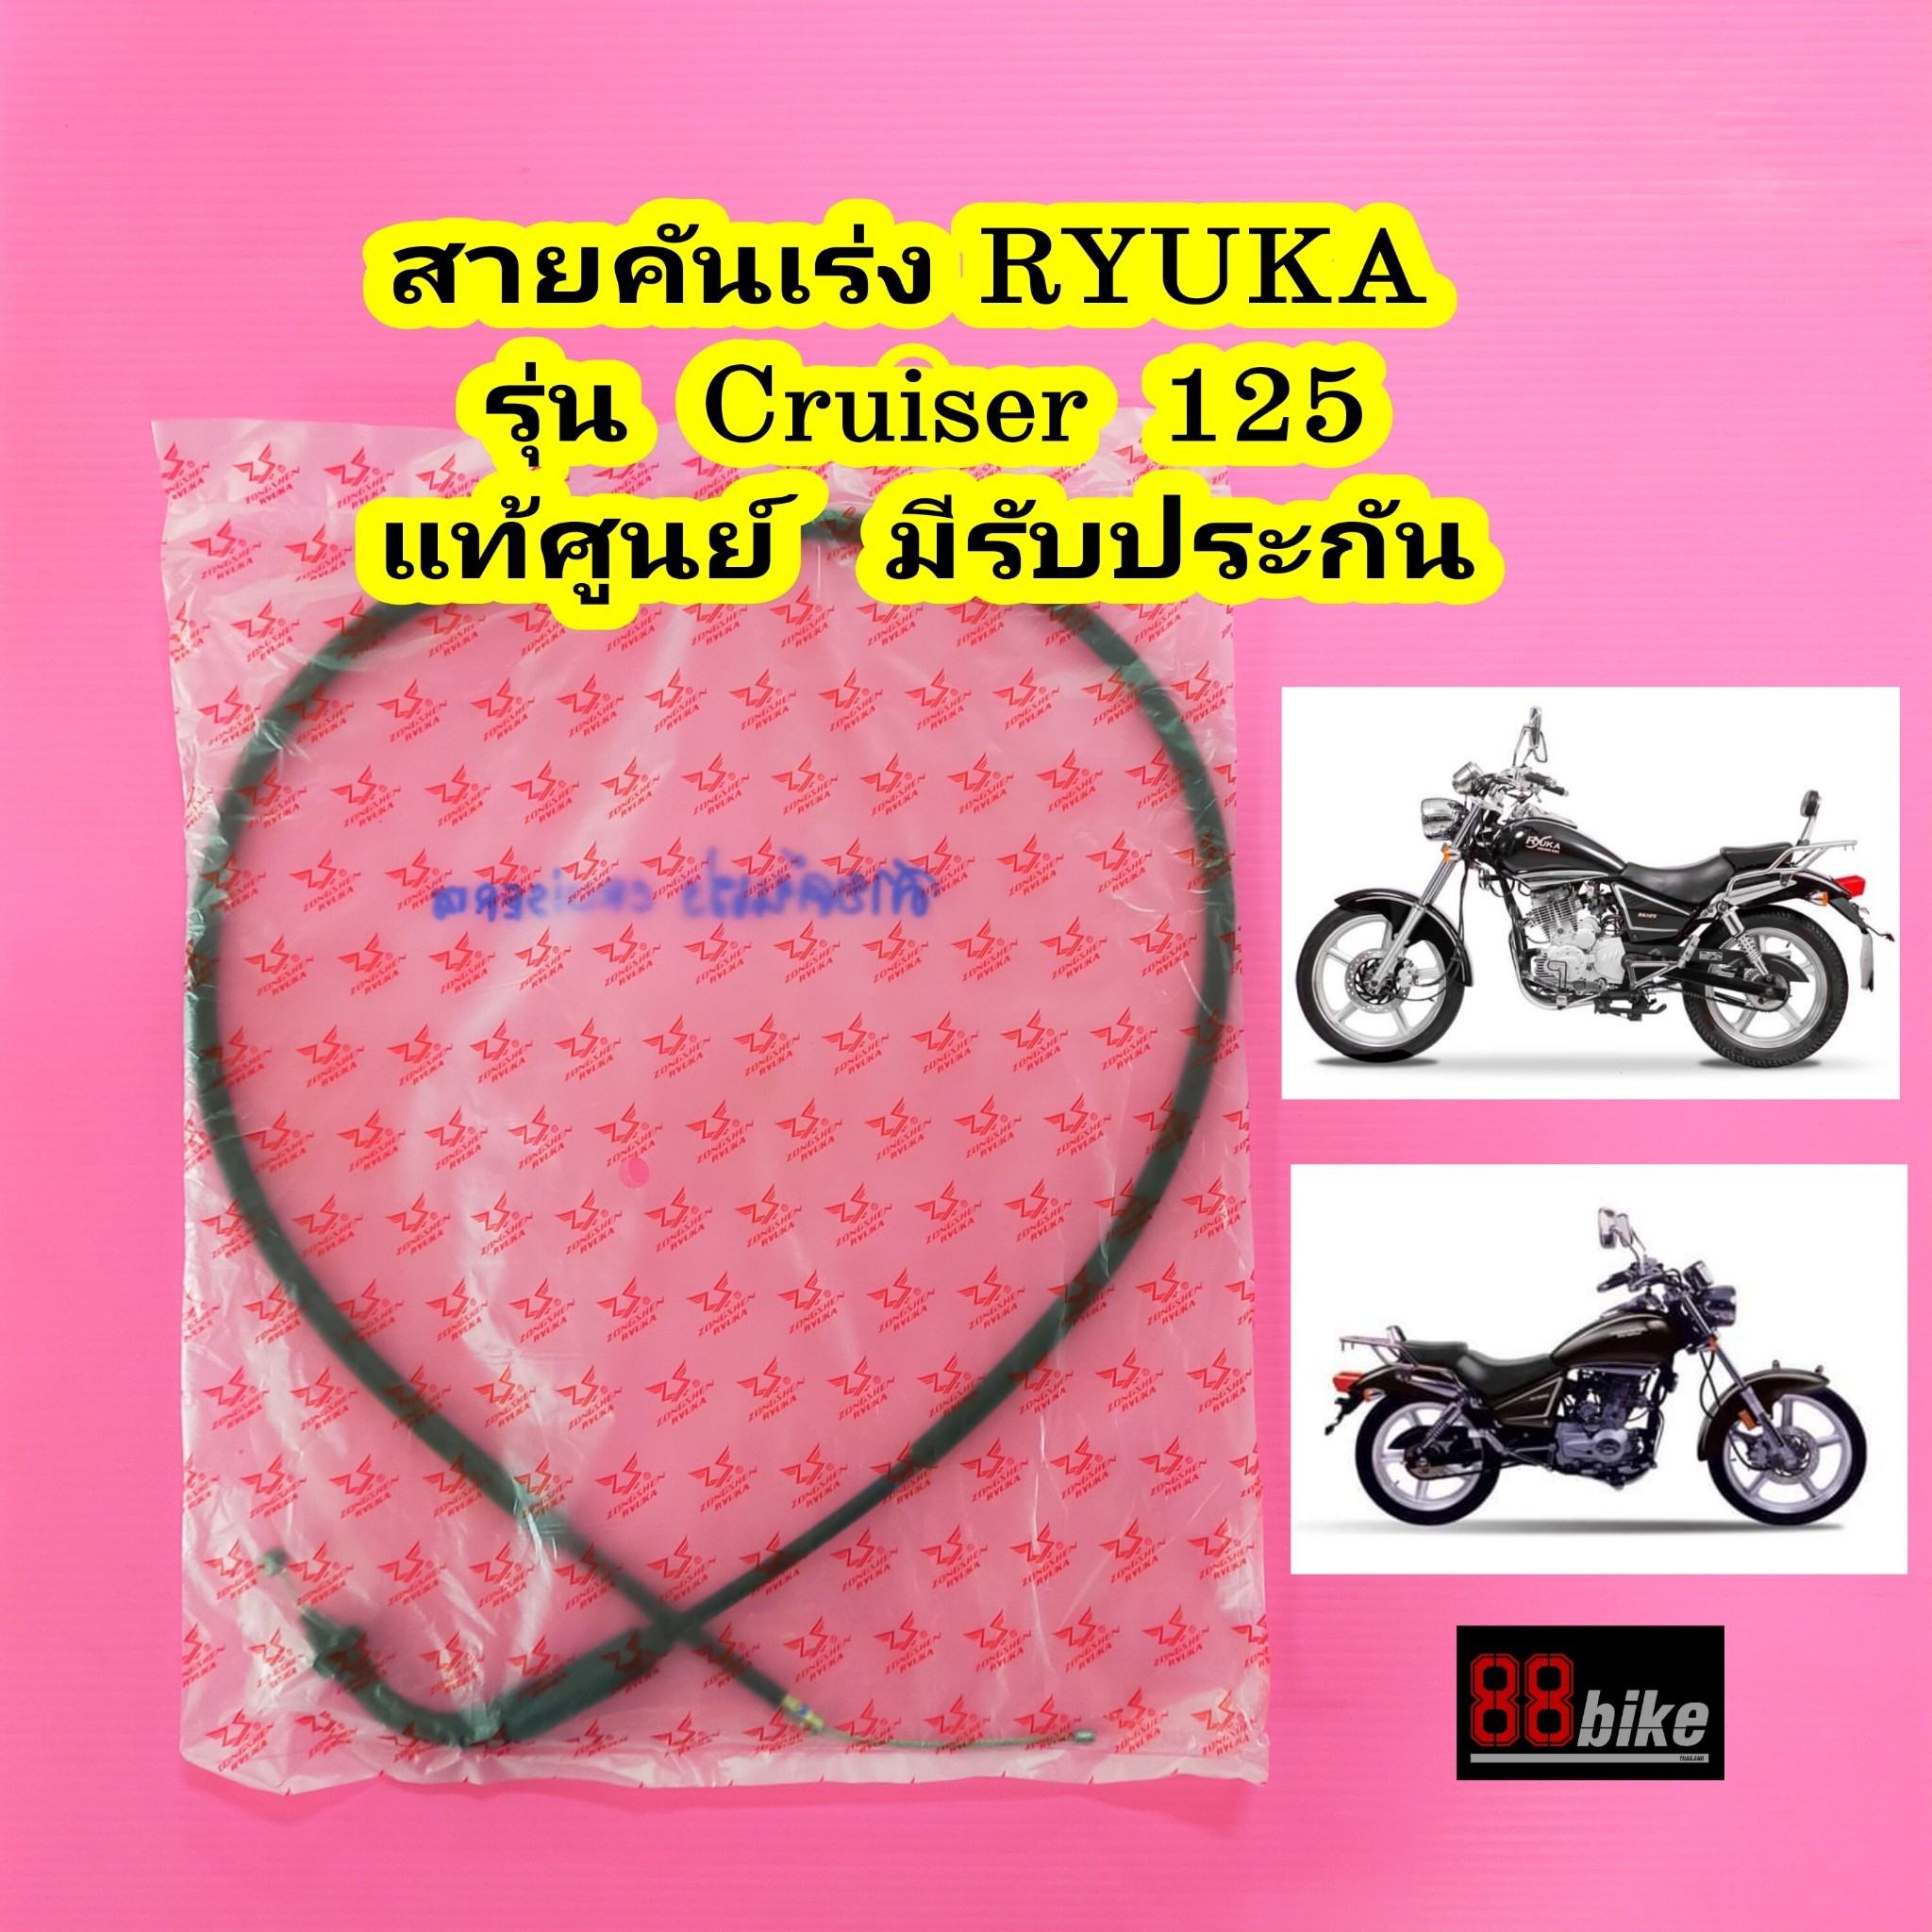 สายคันเร่ง Ryuka Cruiser 125cc. ครุยเซอร์ แท้ศูนย์ 100% มีรับประกัน มีเก็บเงินปลายทาง สายเร่ง ริวก้า